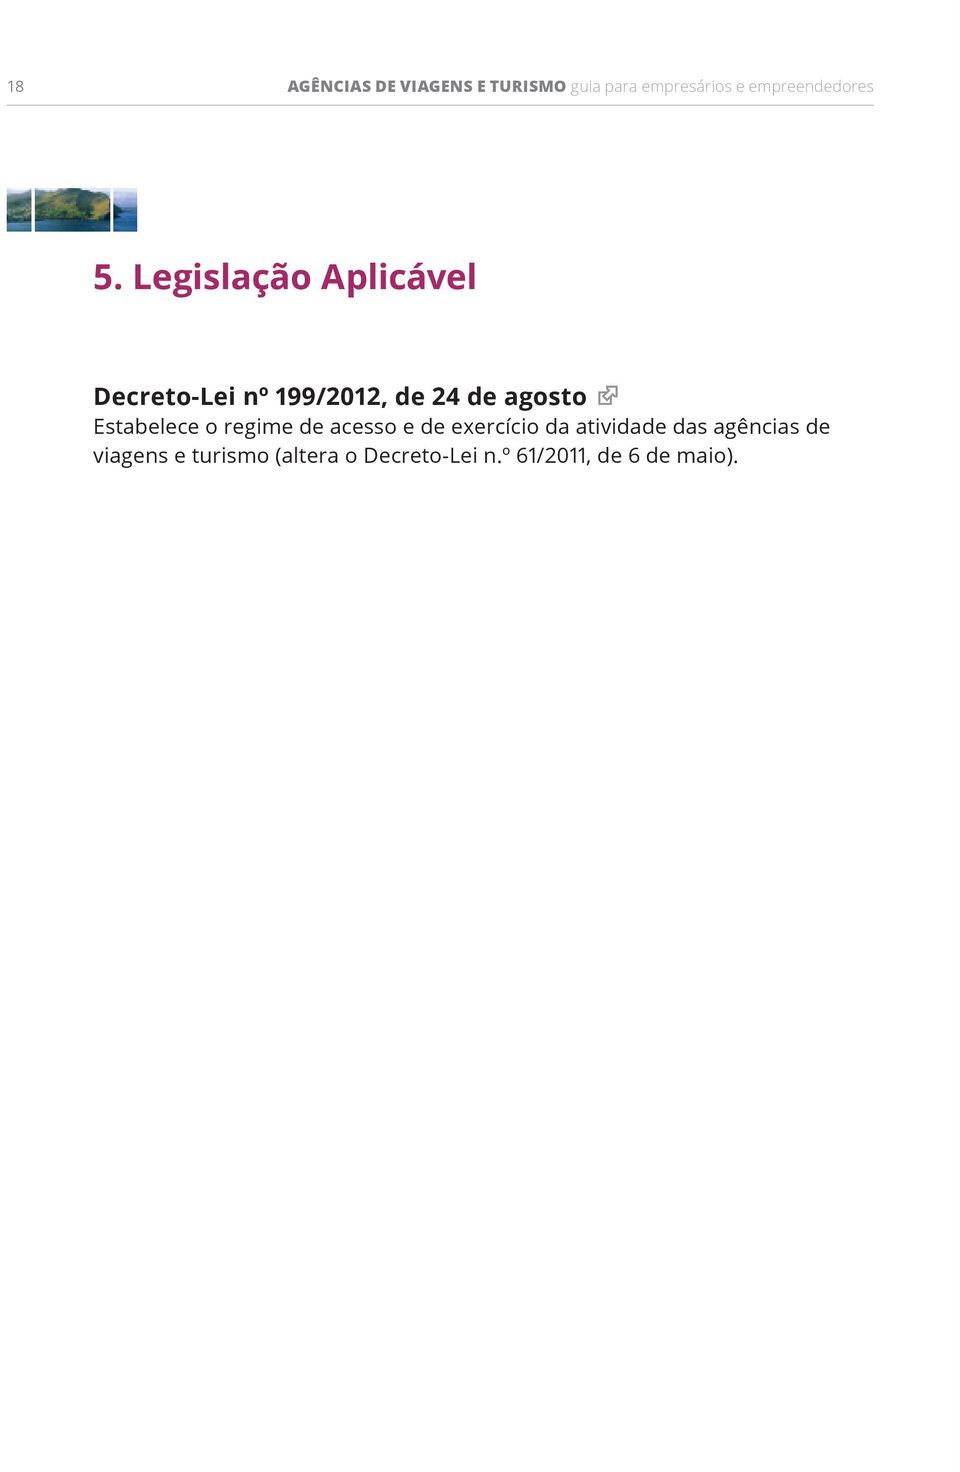 Legislação Aplicável Decreto-Lei nº 199/2012, de 24 de agosto